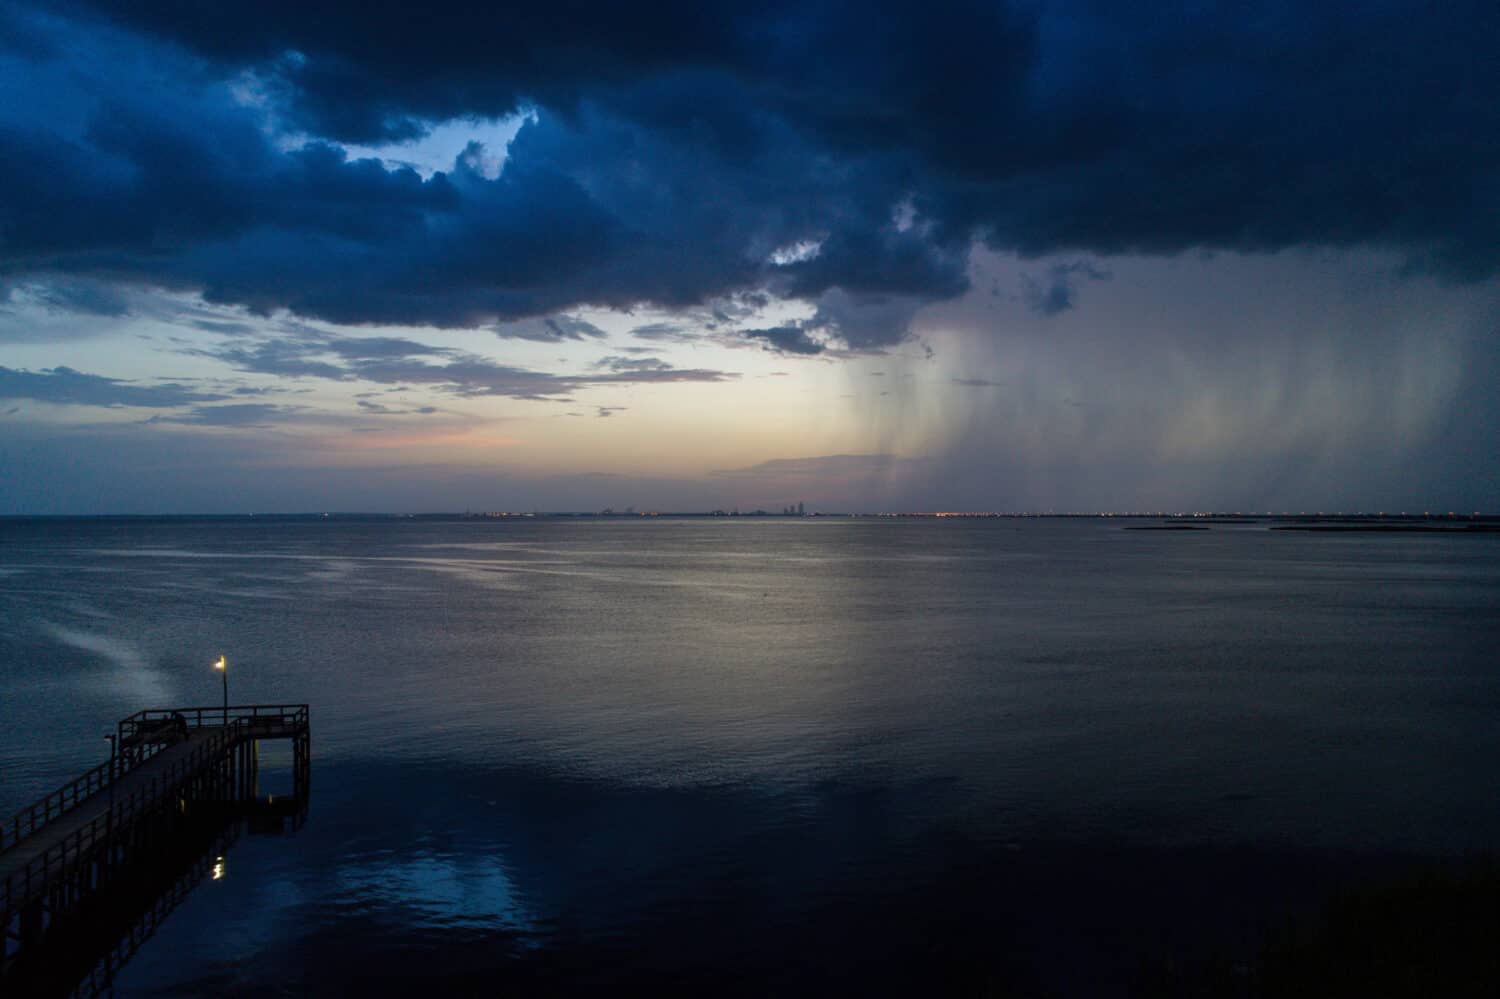 Summer storm over Mobile Bay from Bayfront Park in Daphne, Alabama